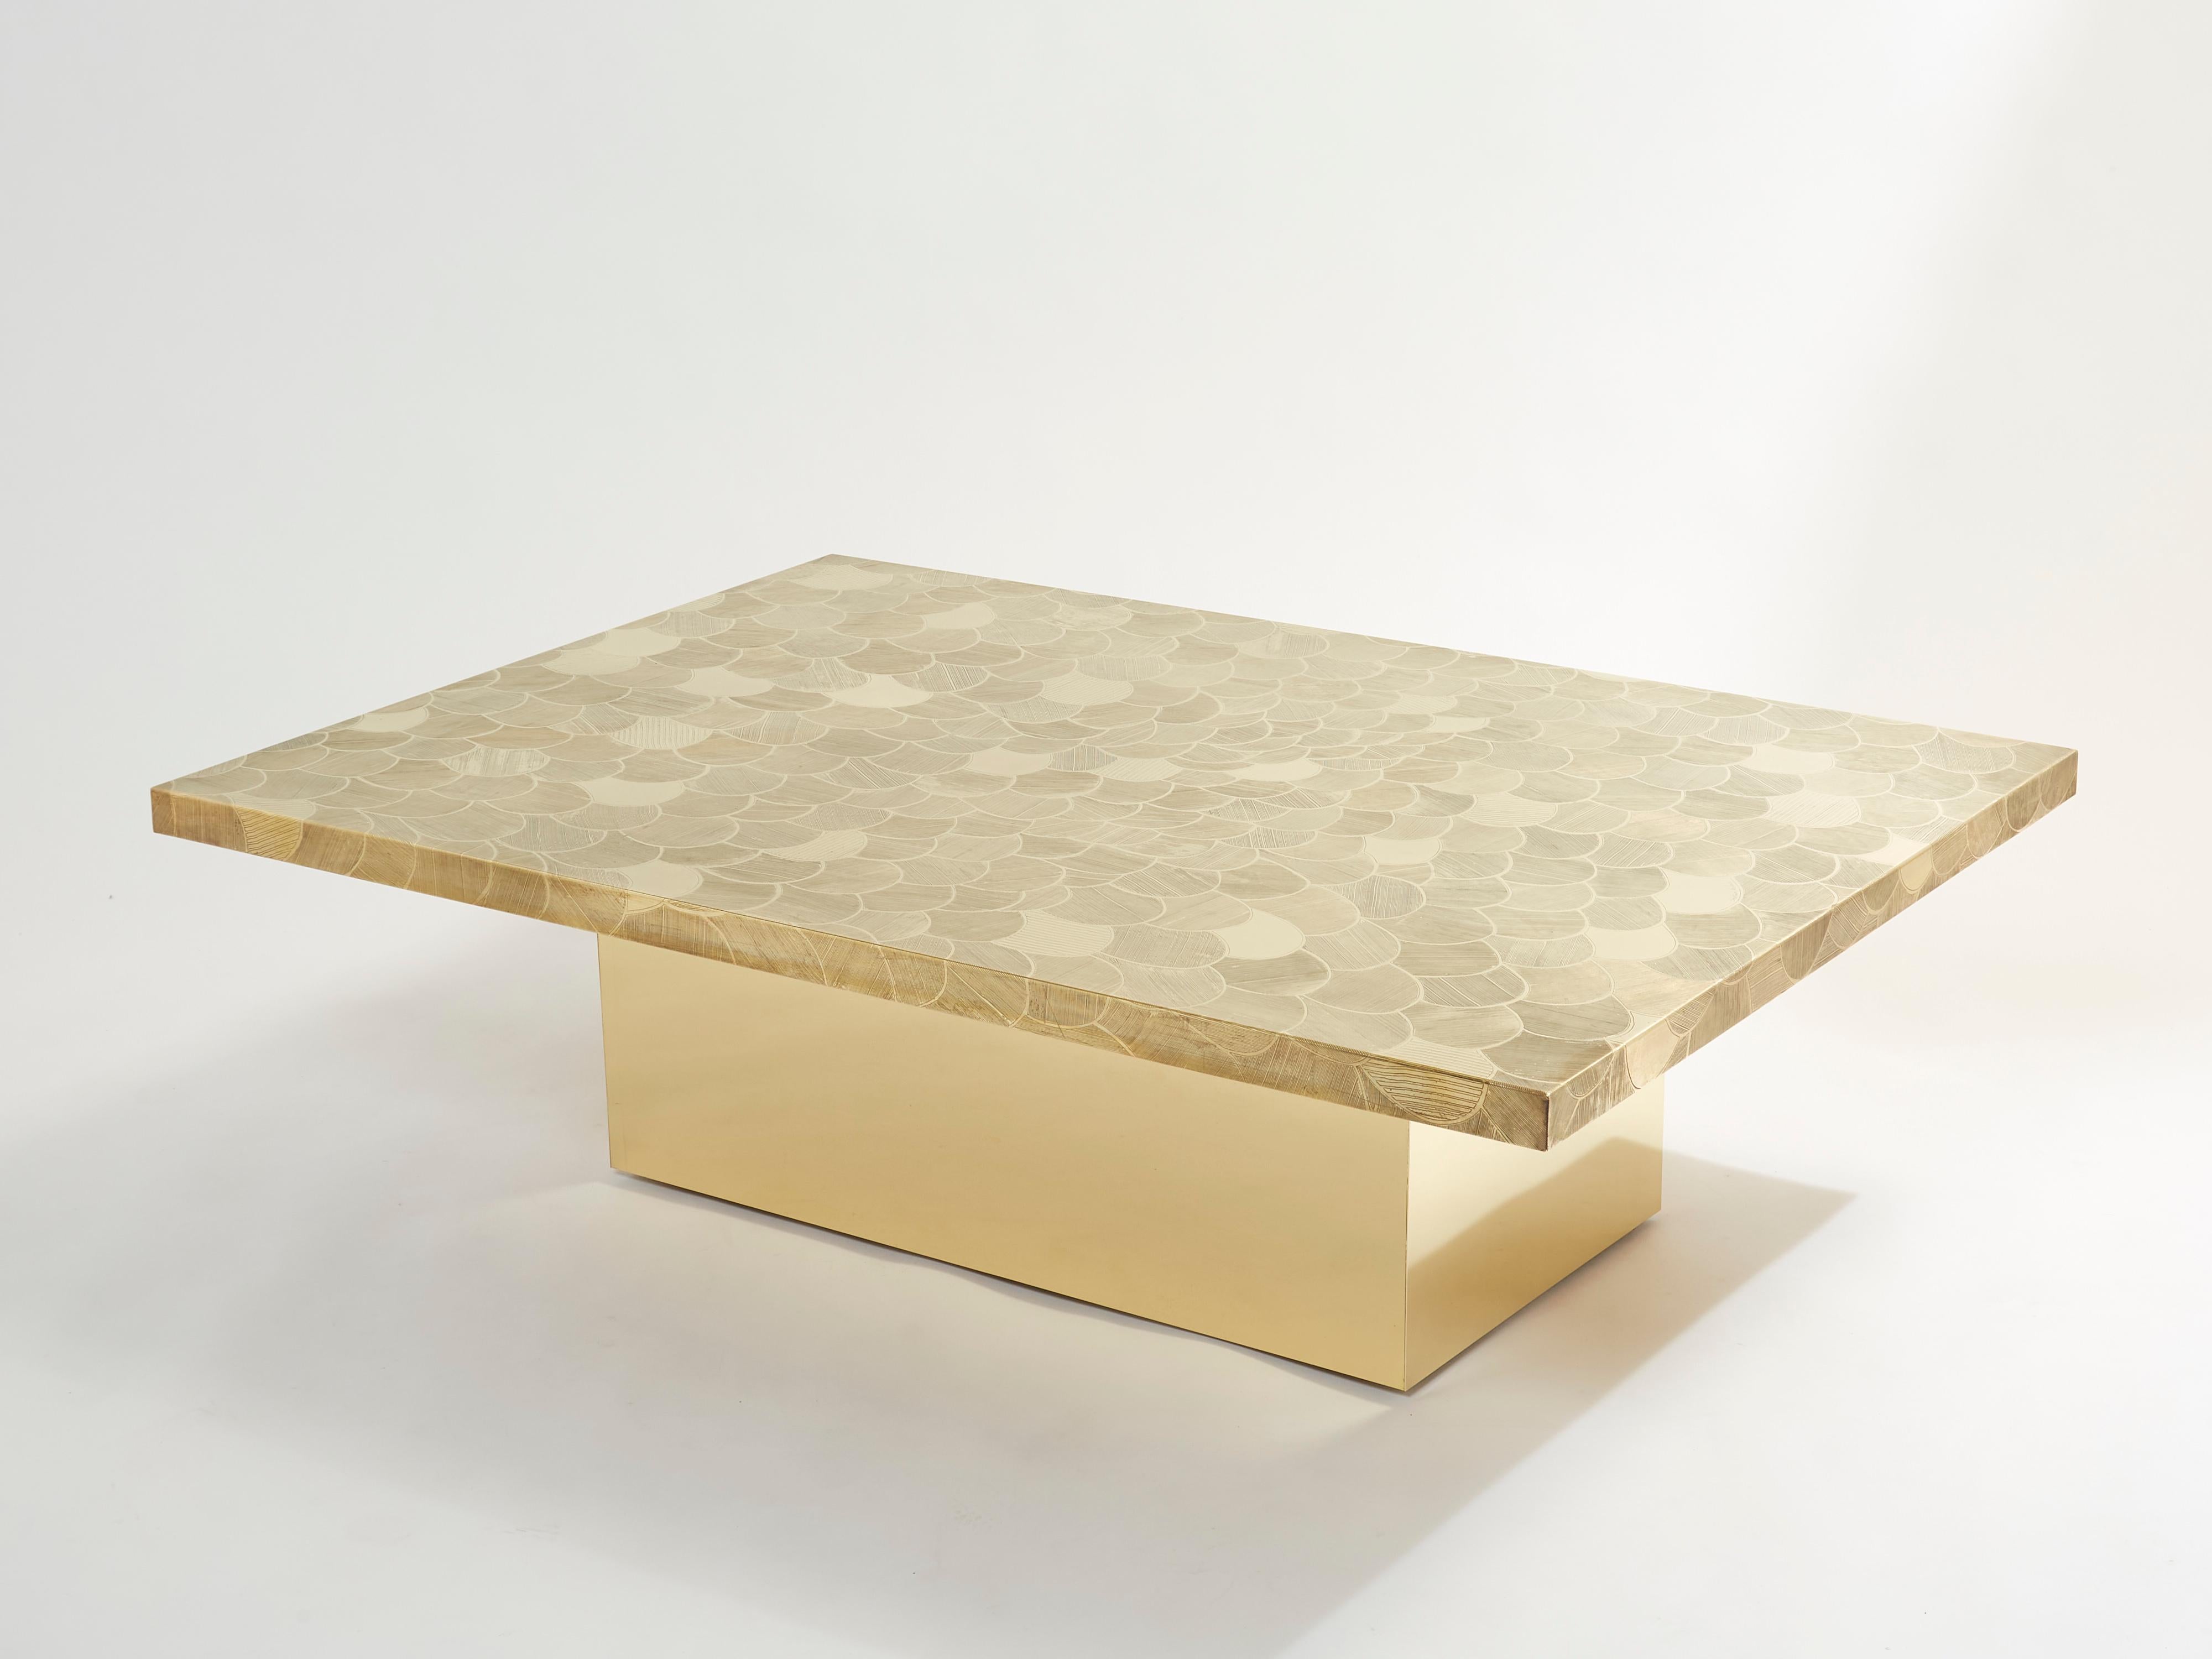 Il s'agit d'une belle table basse belge signée par Christian Krekels à la fin des années 1970. La table présente un magnifique plateau décoratif en laiton gravé, et repose sur une grande base en bois recouverte de laiton. Le plateau rectangulaire